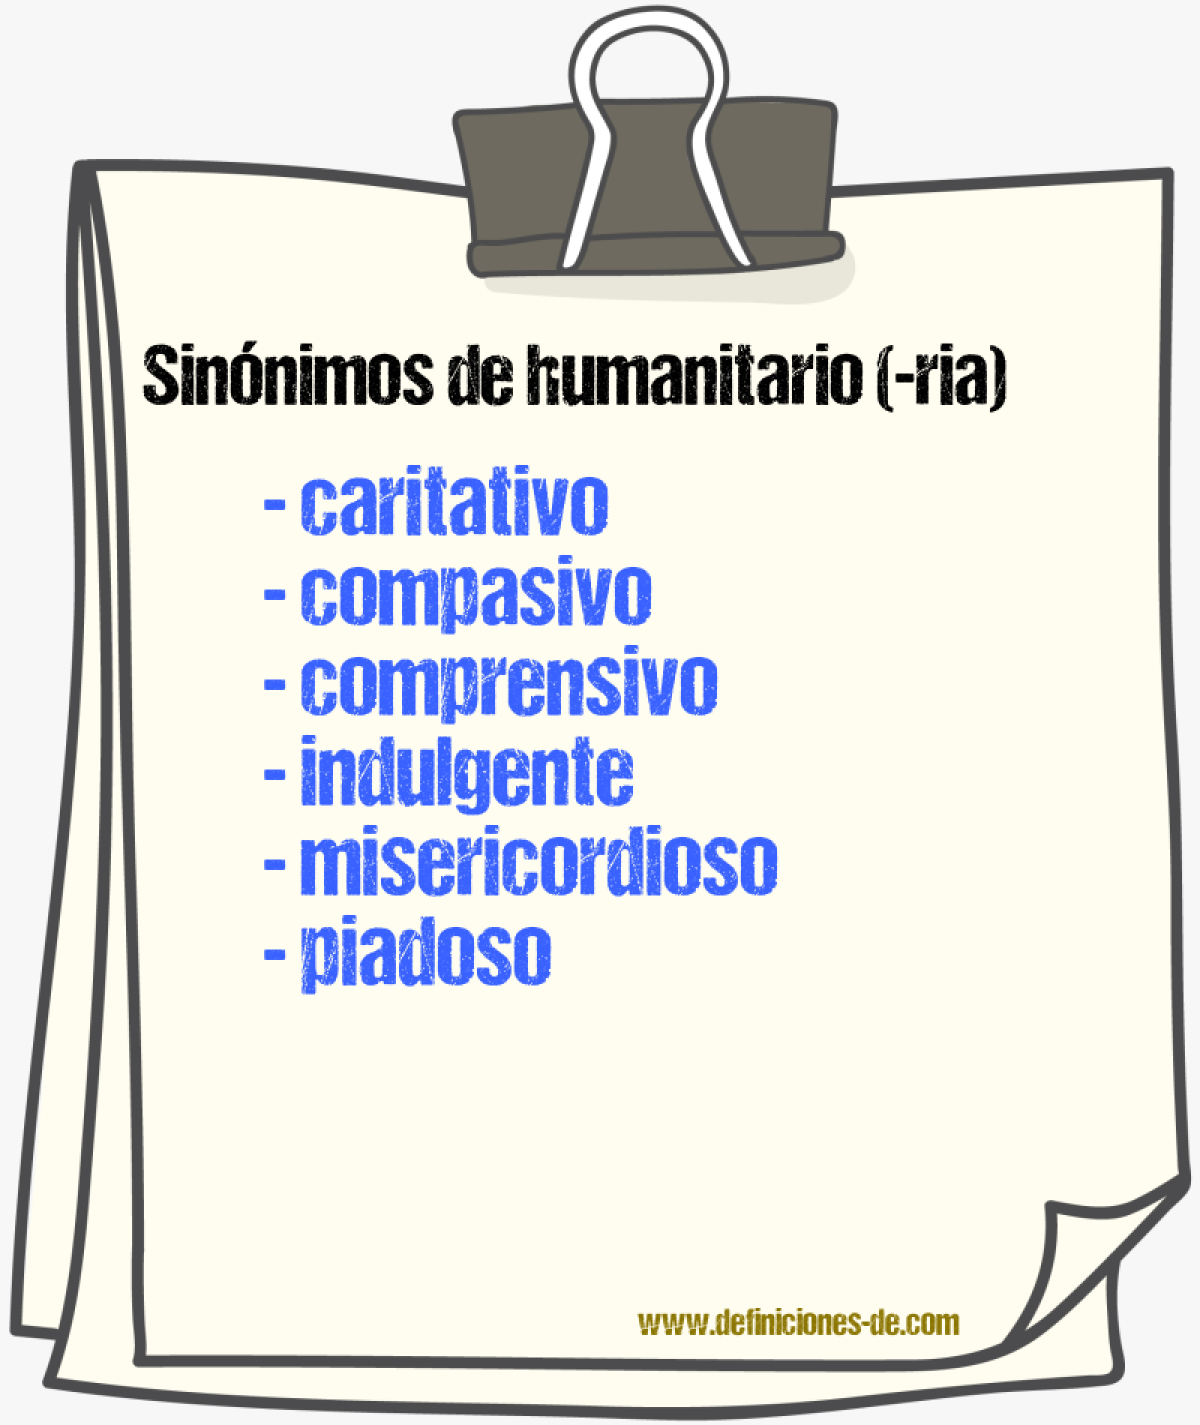 Sinónimos de humanitario